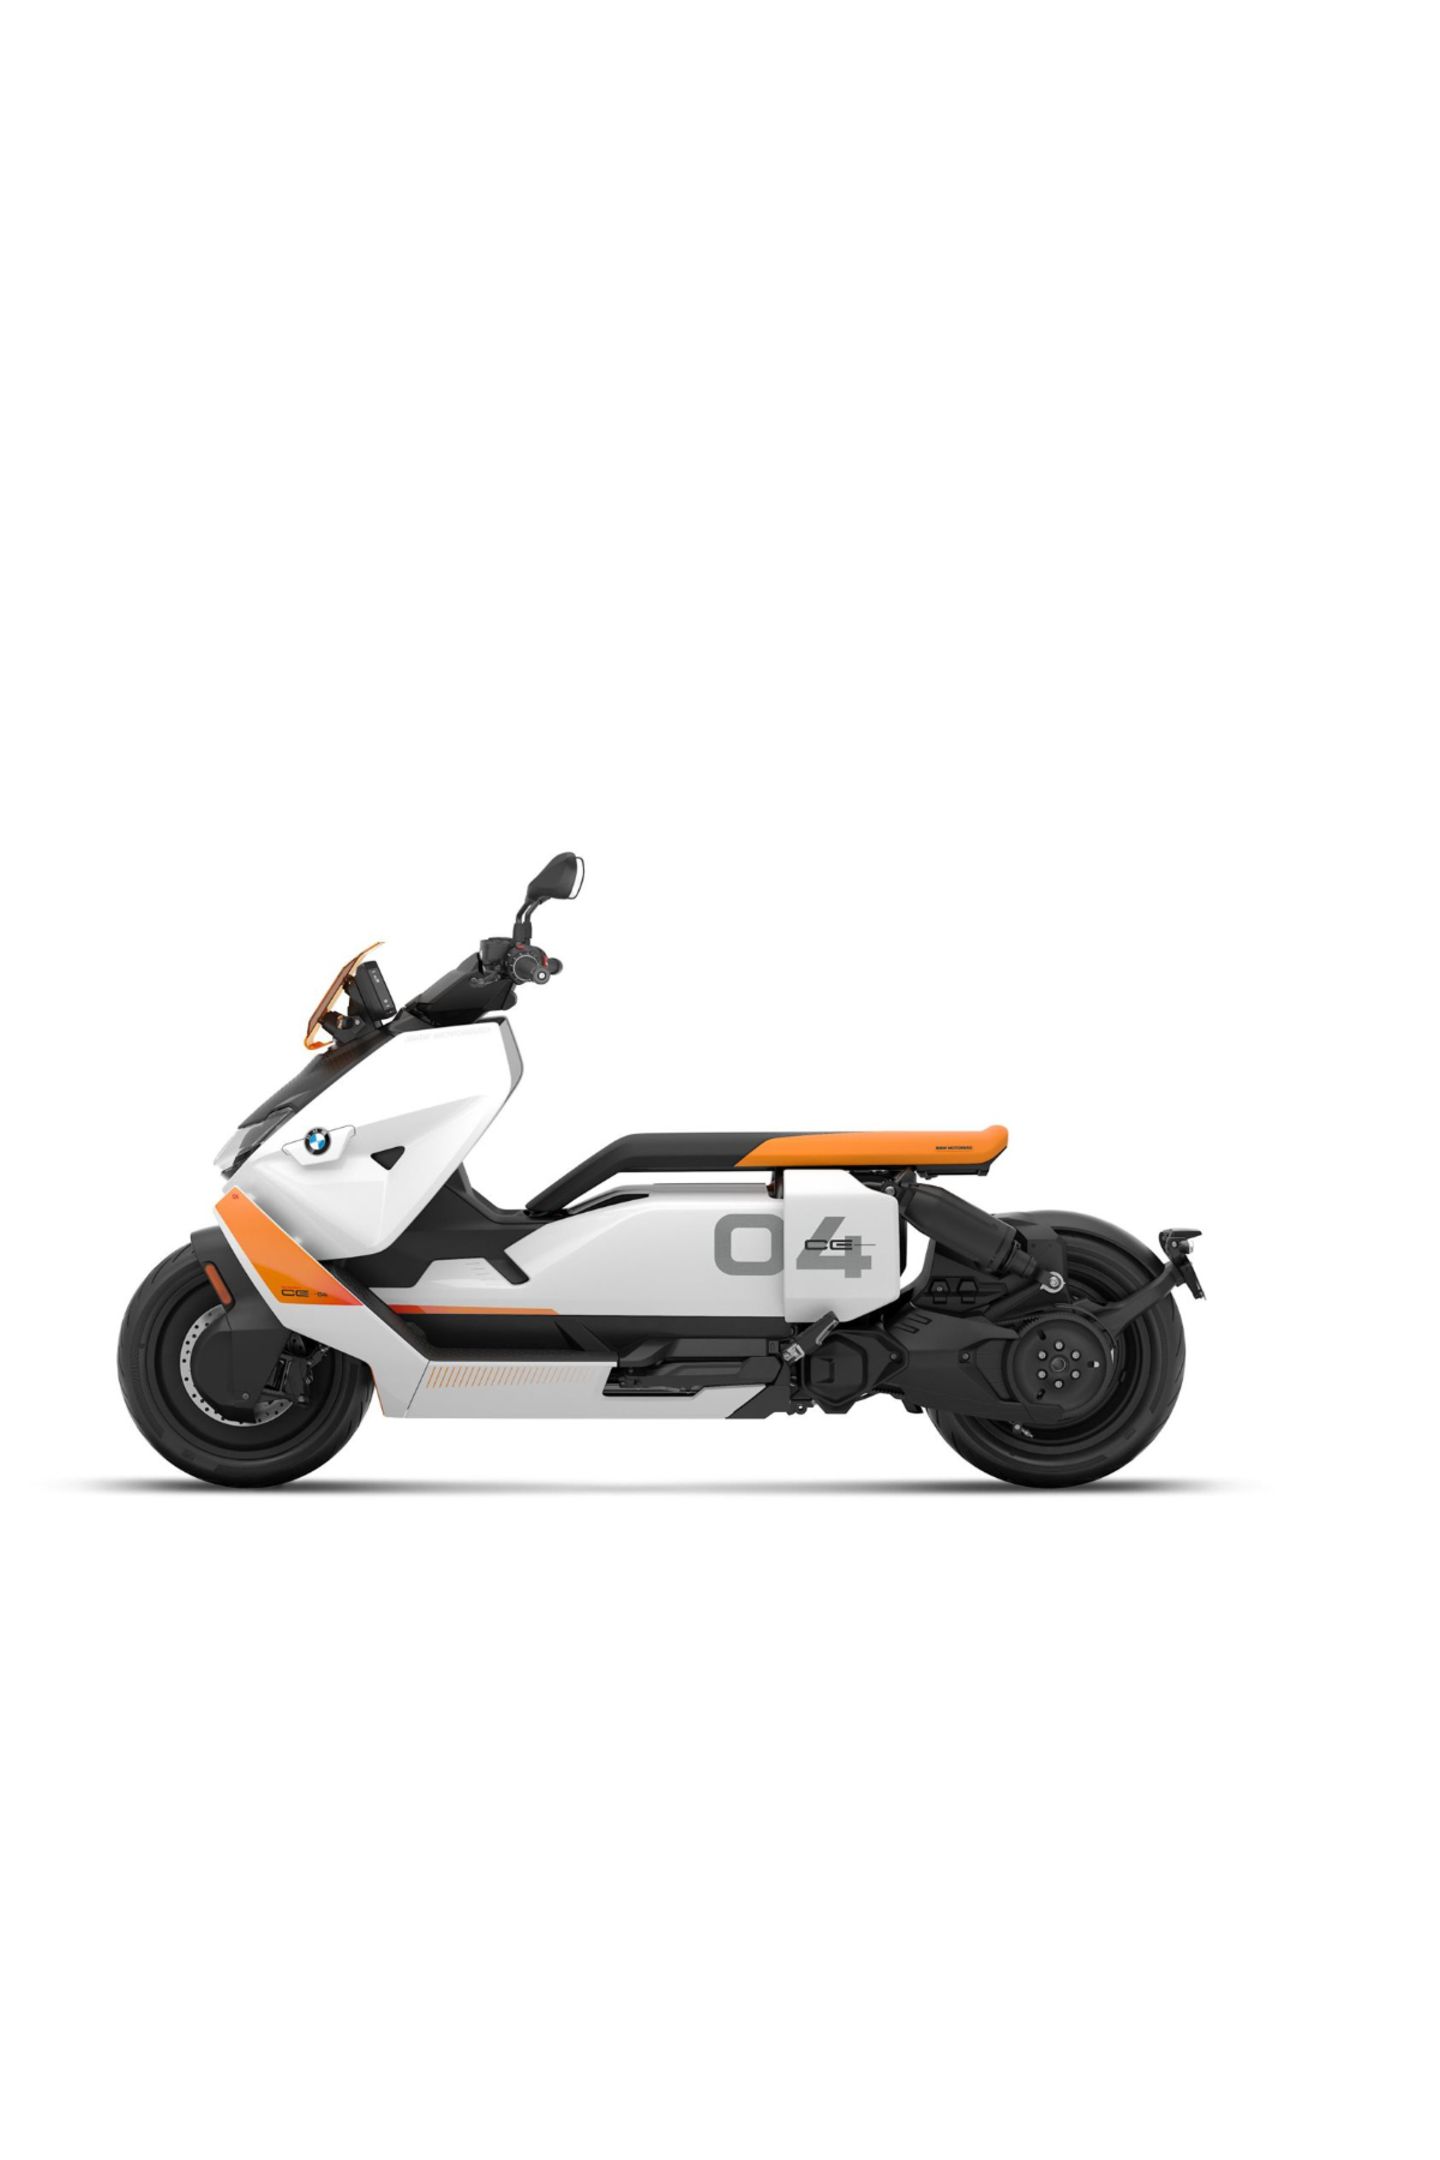 Abgefahren Ziemlich cool, besser für die Umwelt und ganz neu: Ein E-Motorrad. Dieses Modell sieht nicht nur spacig aus, es bringt uns mit bis zu 120 km/h auch bis zu 120 Kilometer weit. "CE04" von BMW, ab 11 900 Euro.